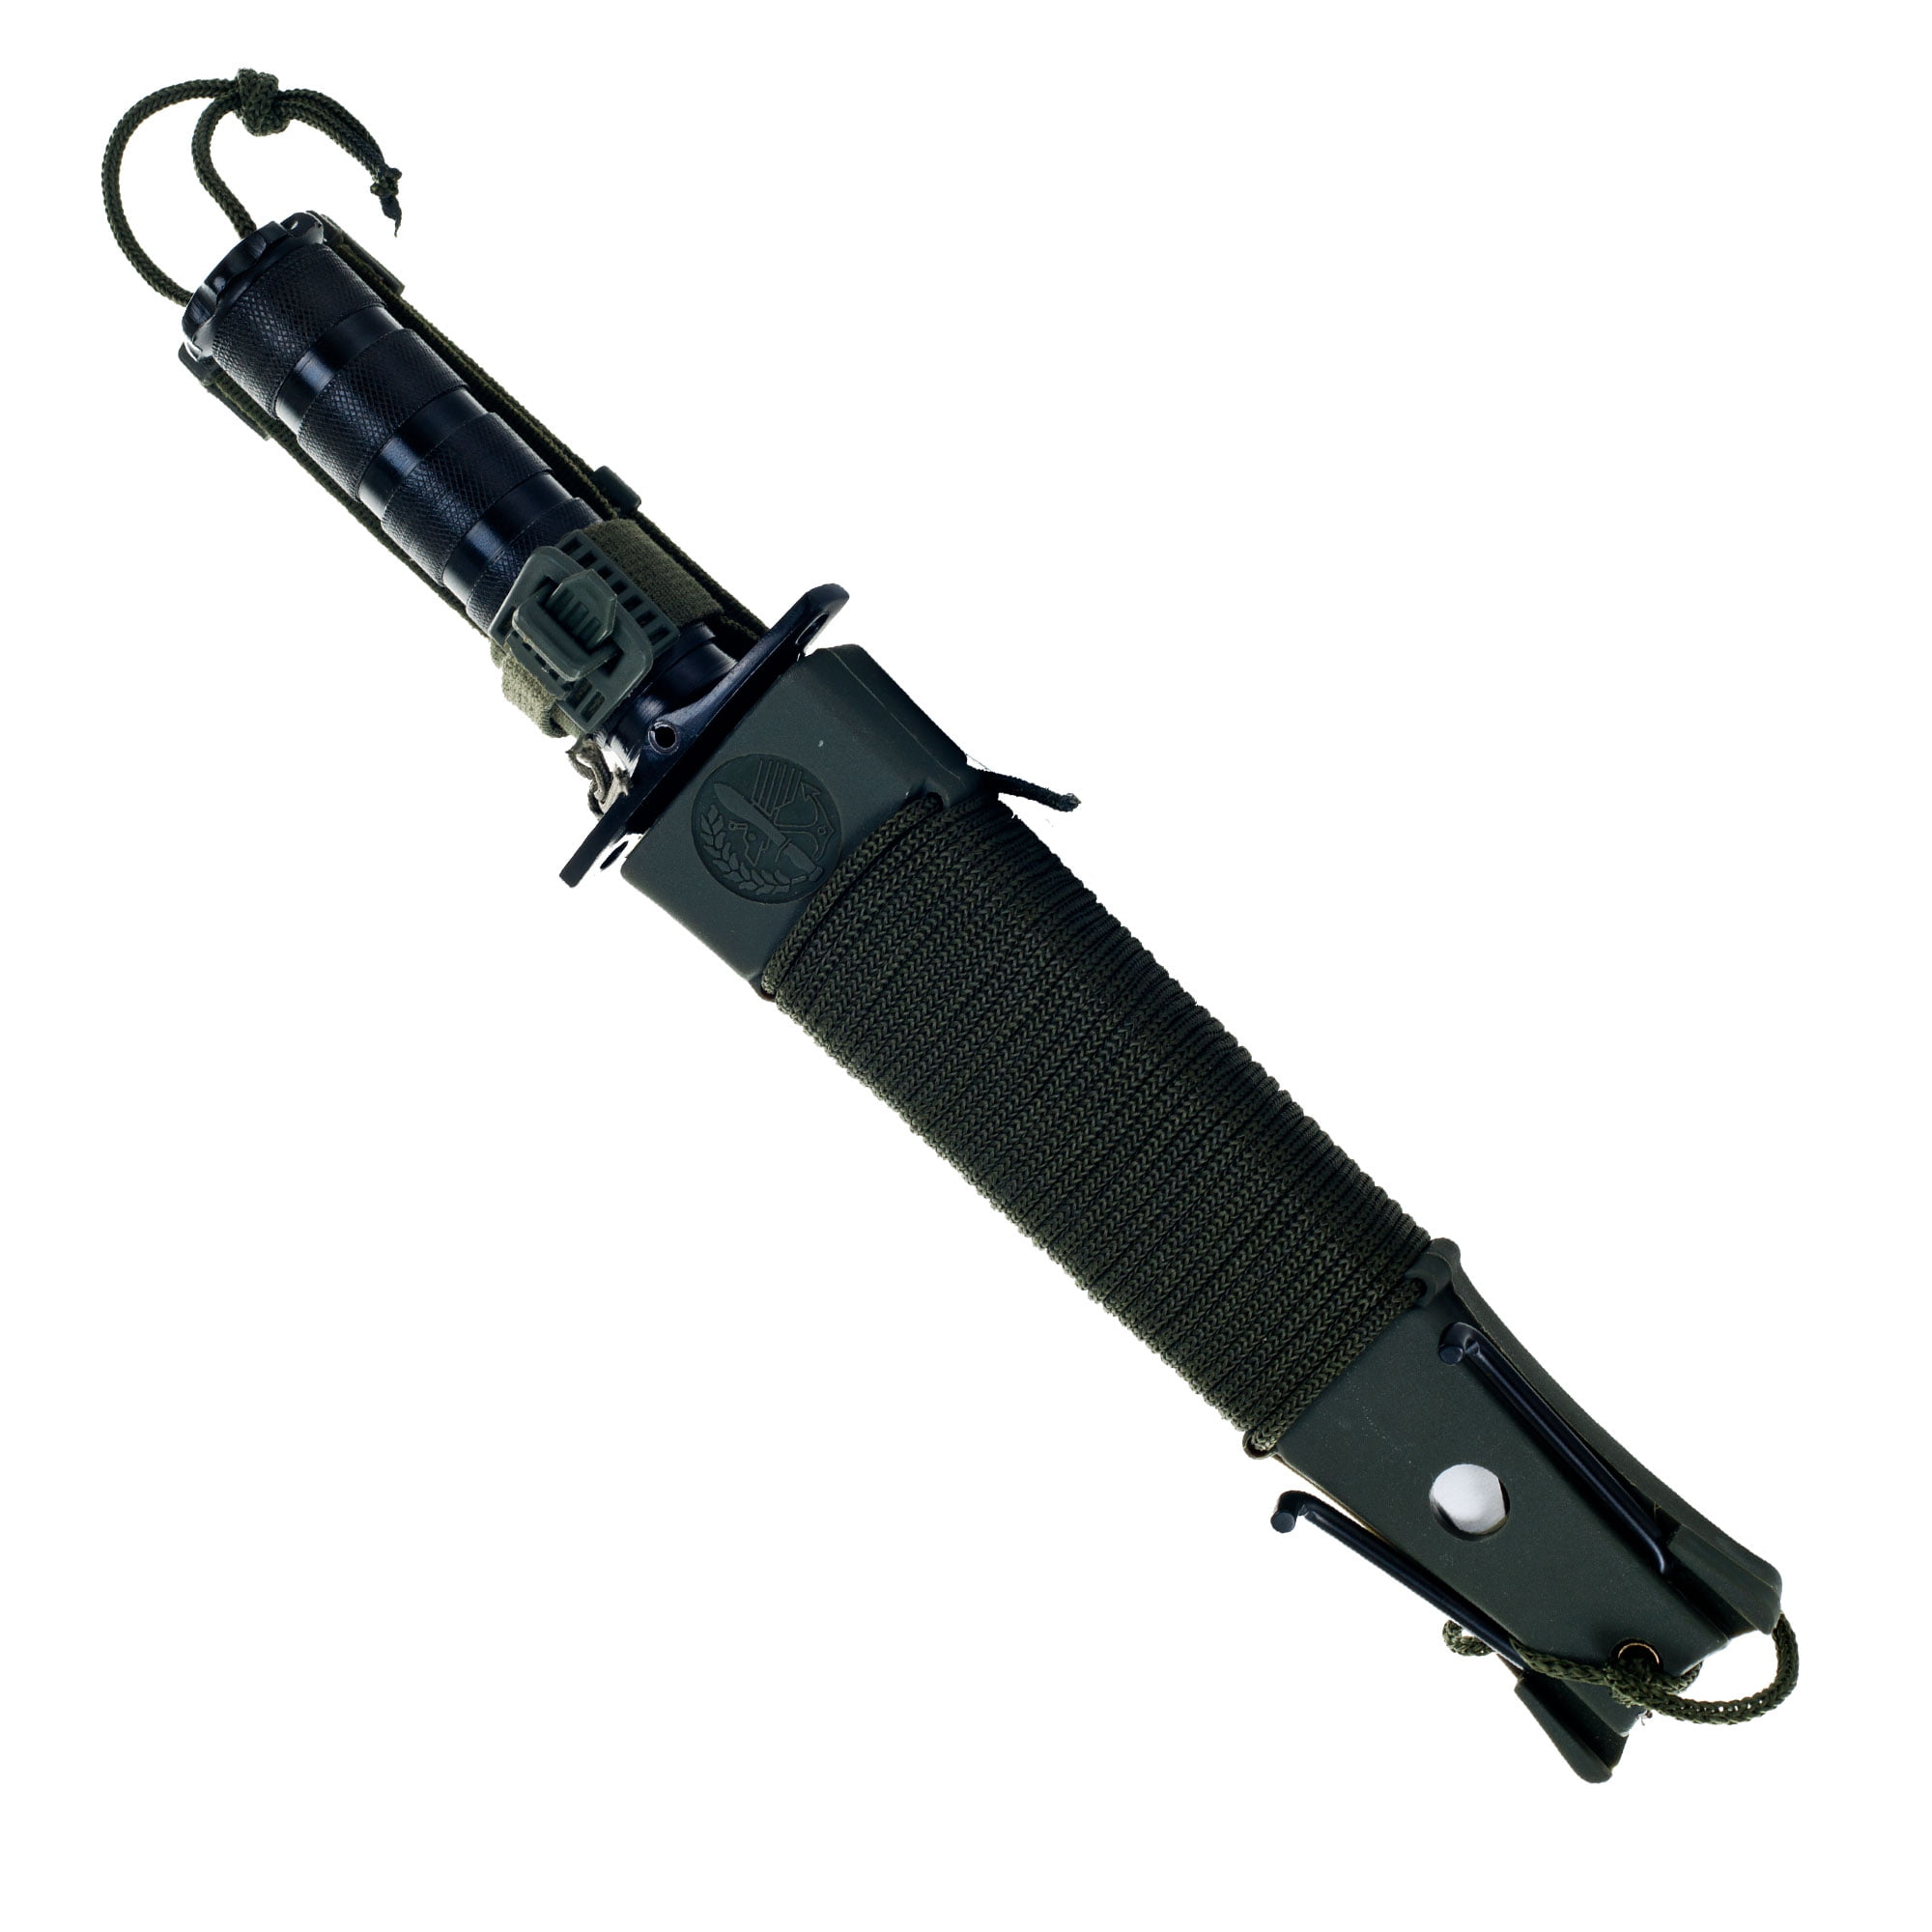 Cuchillo de Supervivencia Rothco Jungle Survival Kit Knife • El Bunkker